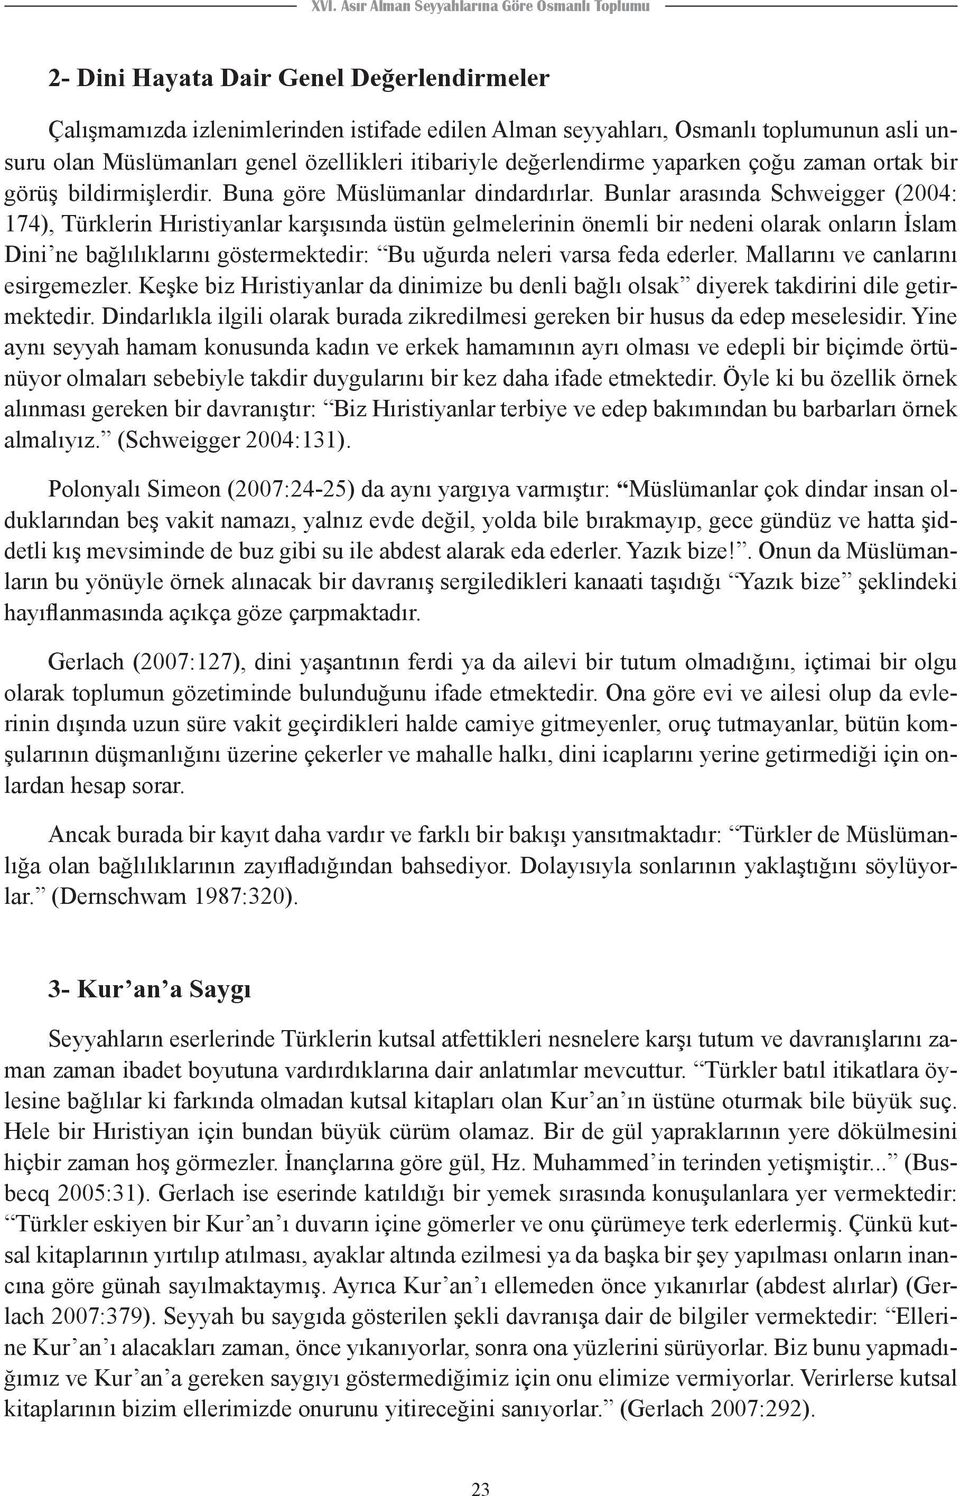 Bunlar arasında Schweigger (2004: 174), Türklerin Hıristiyanlar karşısında üstün gelmelerinin önemli bir nedeni olarak onların İslam Dini ne bağlılıklarını göstermektedir: Bu uğurda neleri varsa feda